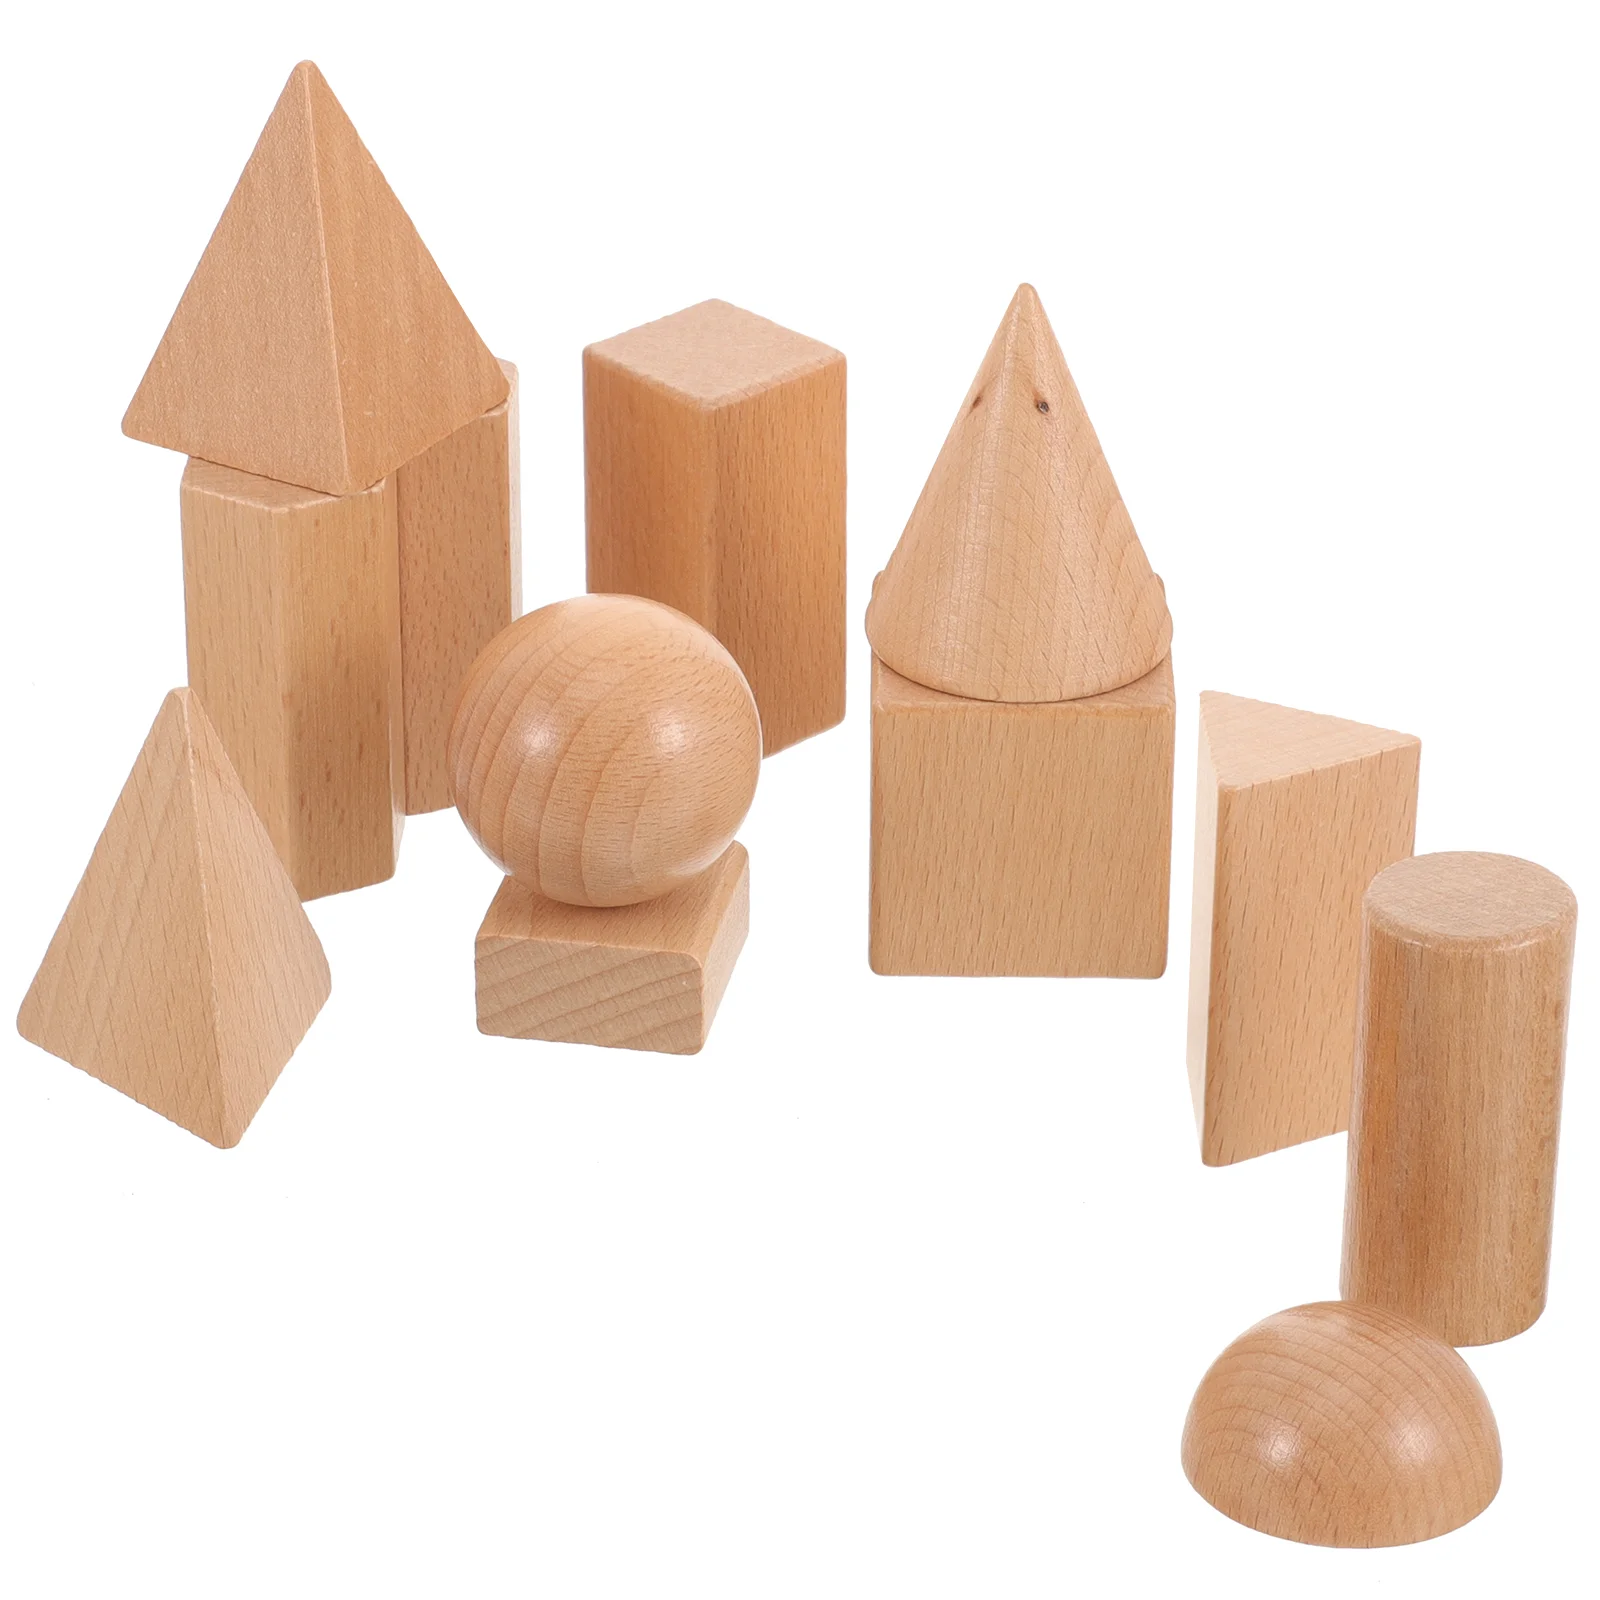 

Деревянные игрушки для малышей, Геометрическая модель, детские товары, развивающая игрушка, учебные пособия, интересный обучающий аксессуар